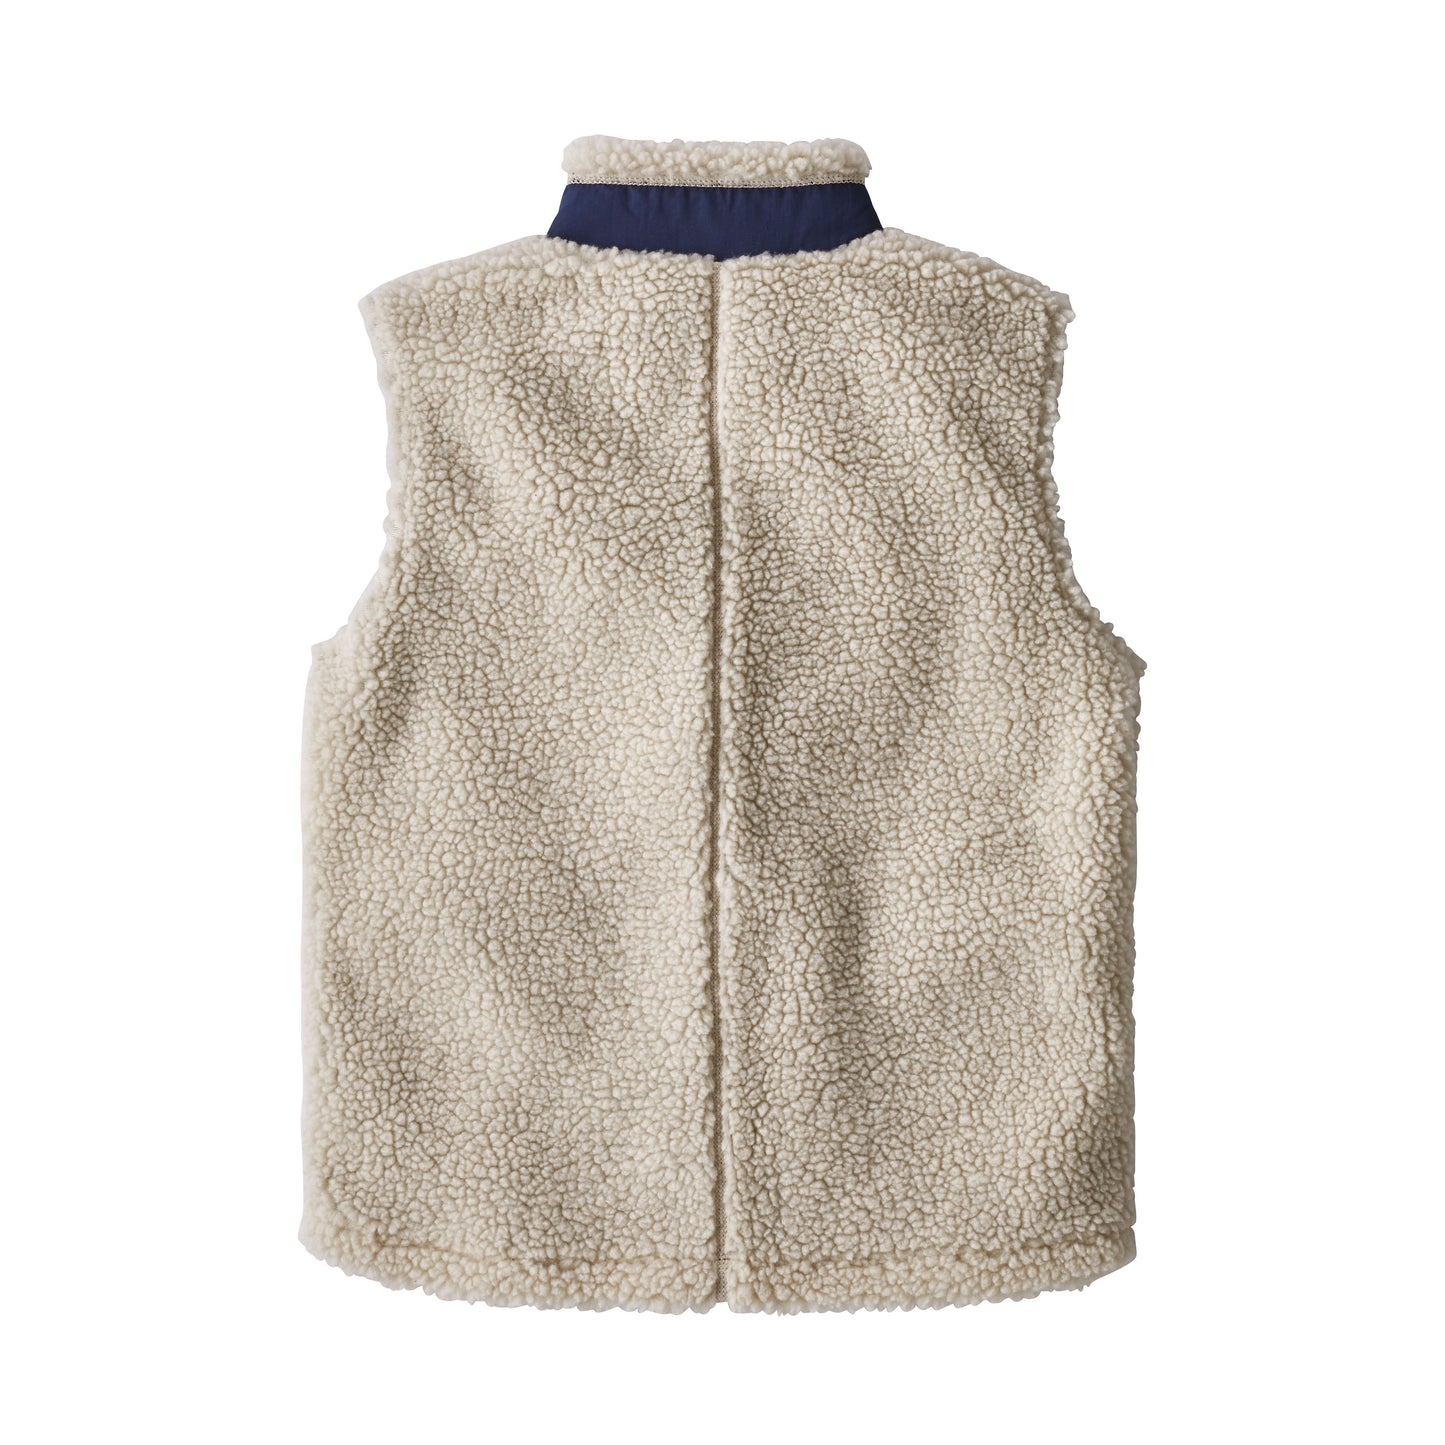 Patagonia®大童款 Retro-X® Fleece Vest